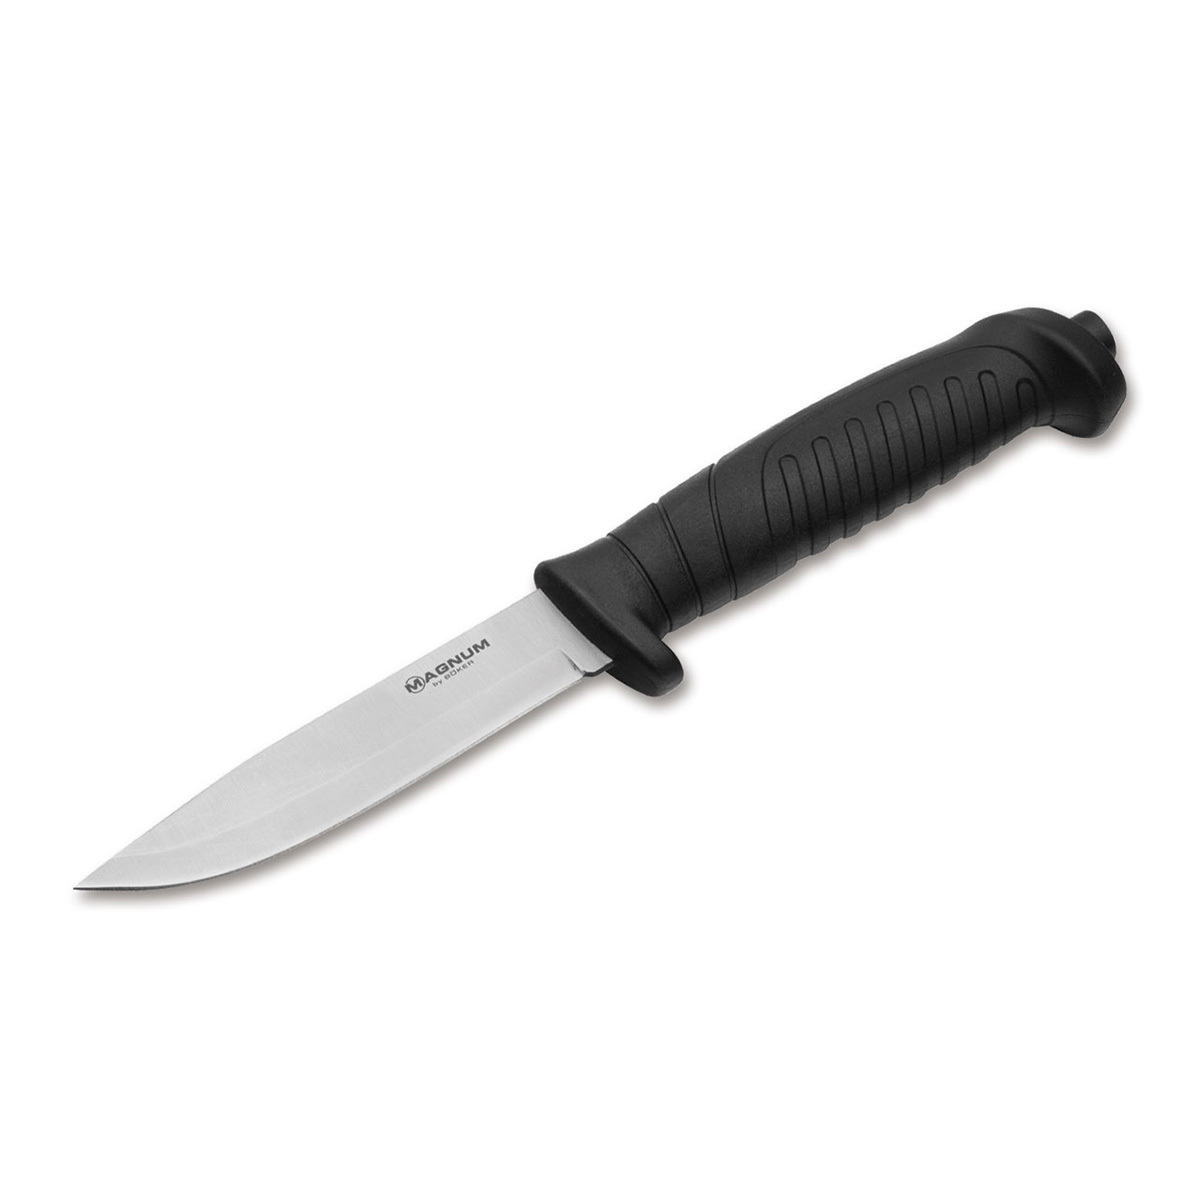 Нож с фиксированным клинком Boker Knivgar Black, сталь 420A, рукоять пластик нож с фиксированным клинком ontario rd7 micarta серрейтор